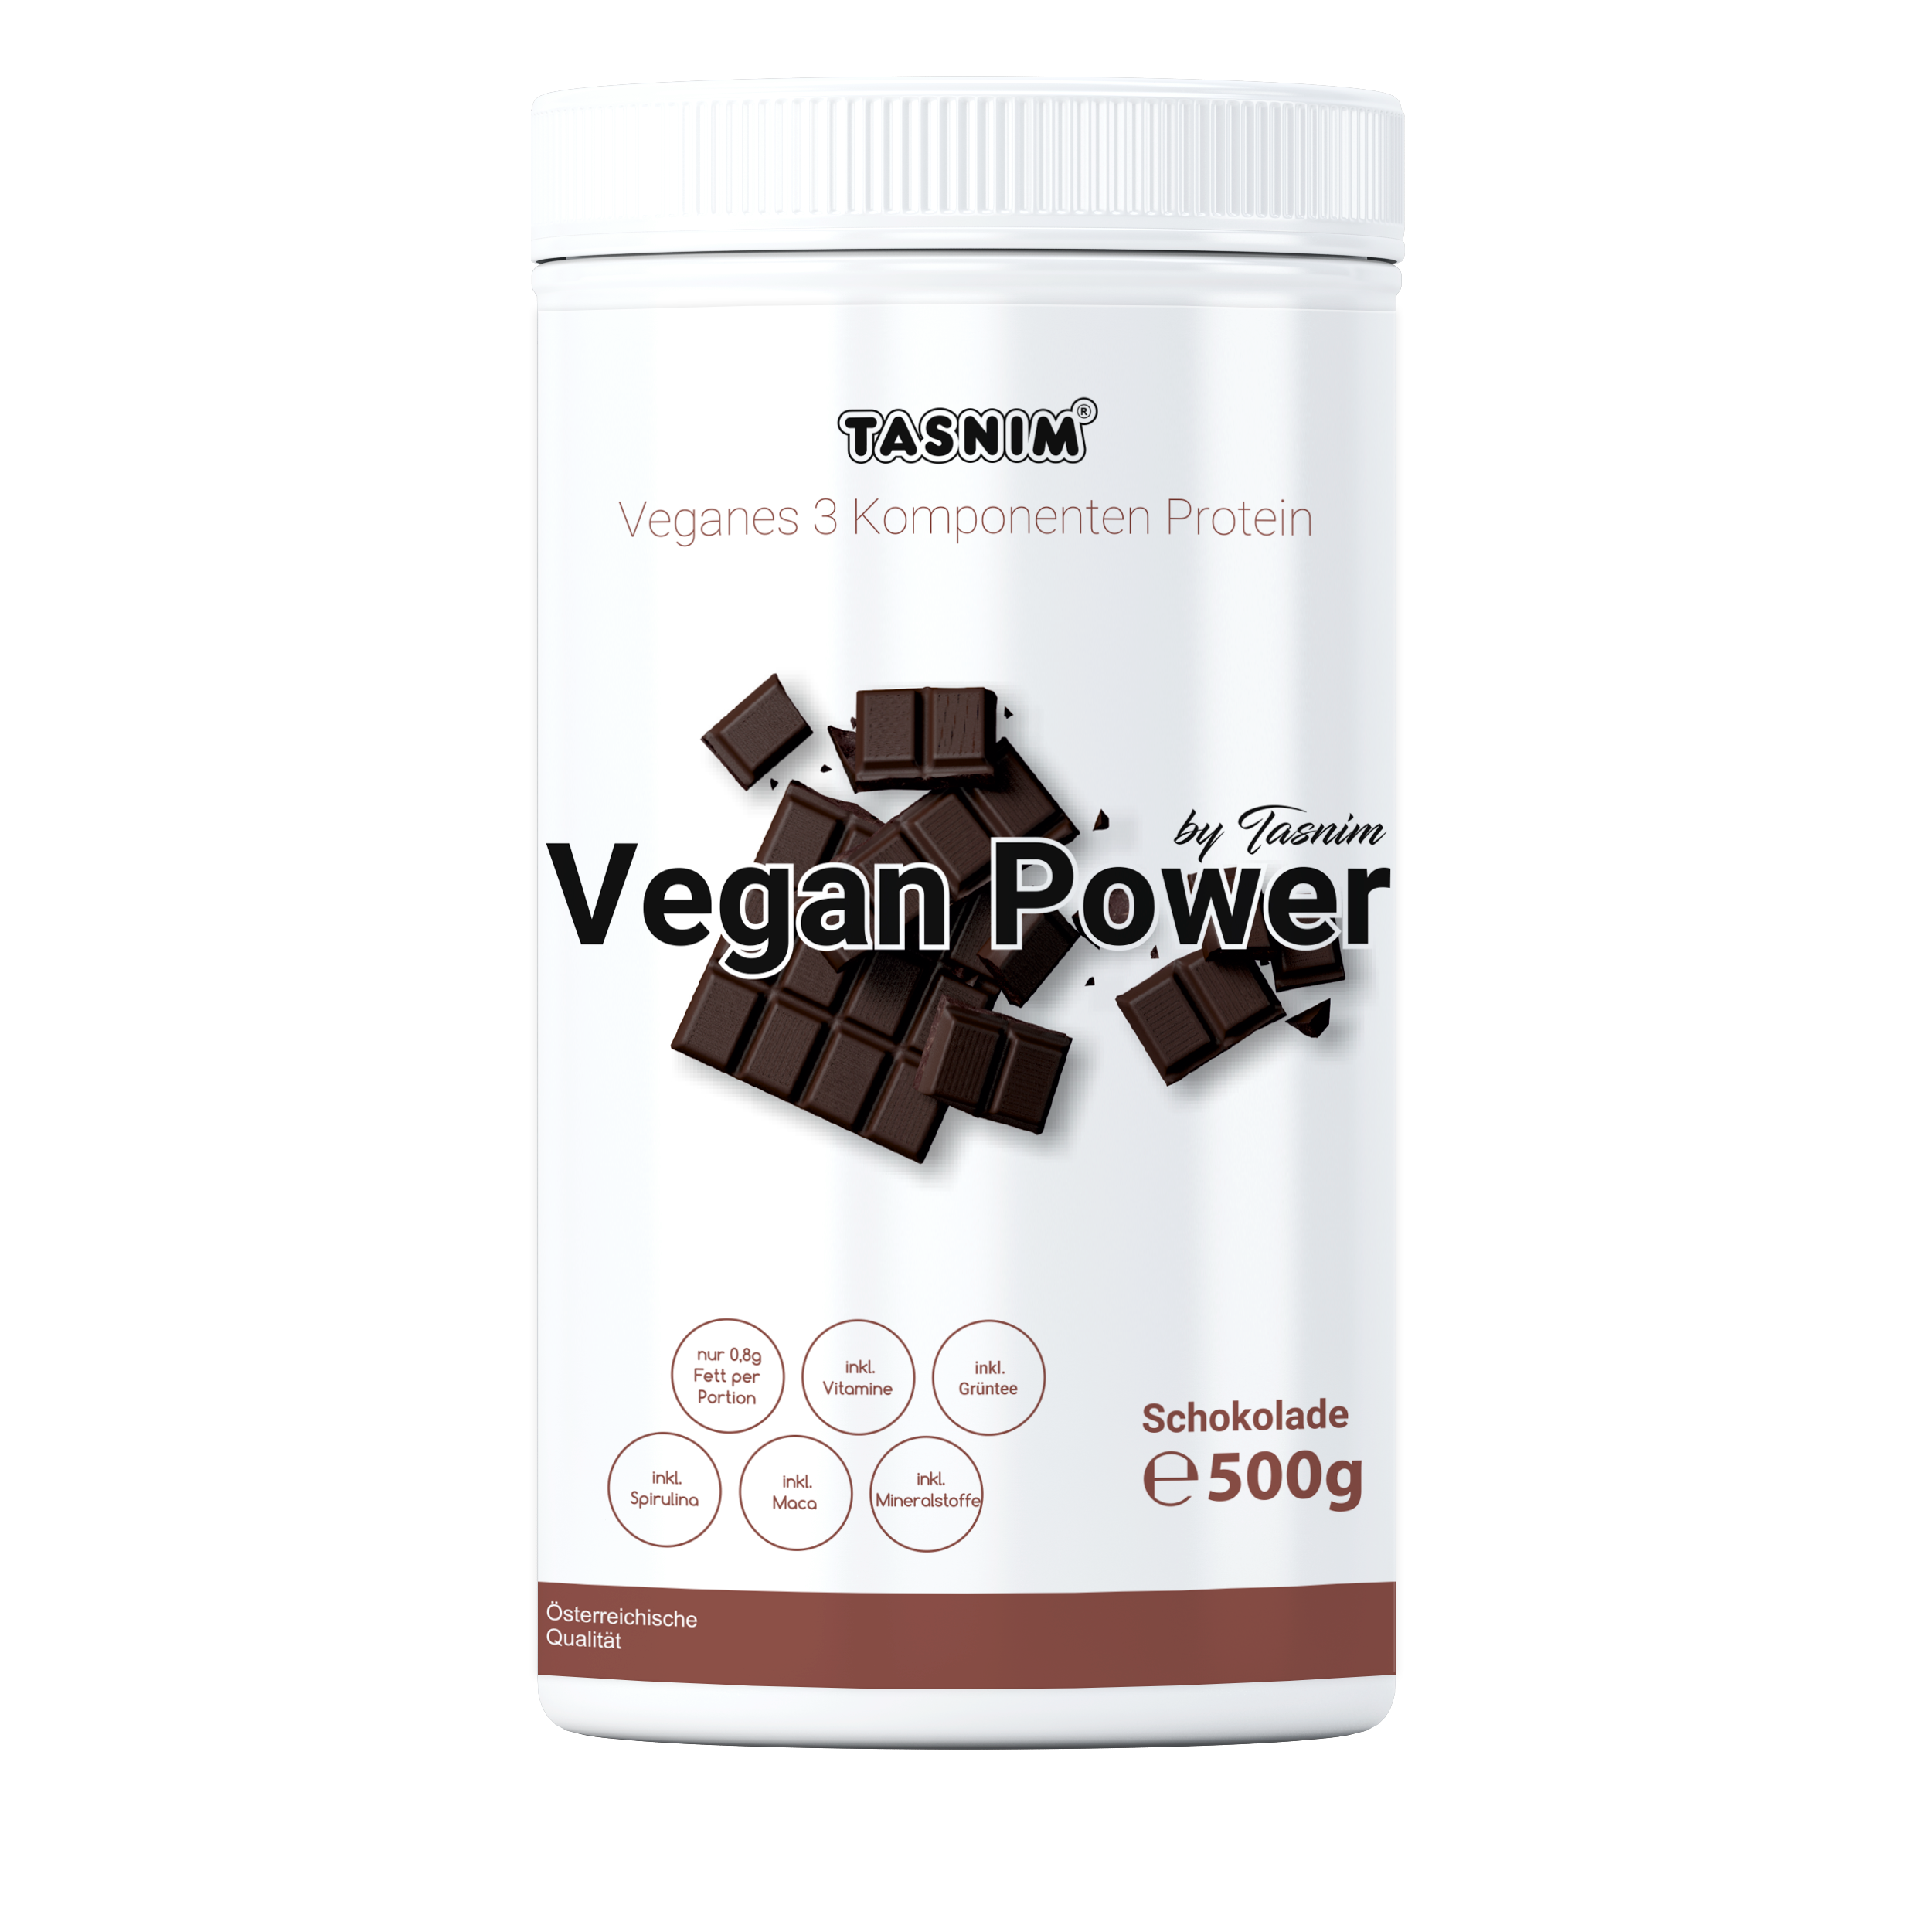 Tasnim  Vegan Power Protein Schokolade Tasnim – 500g 